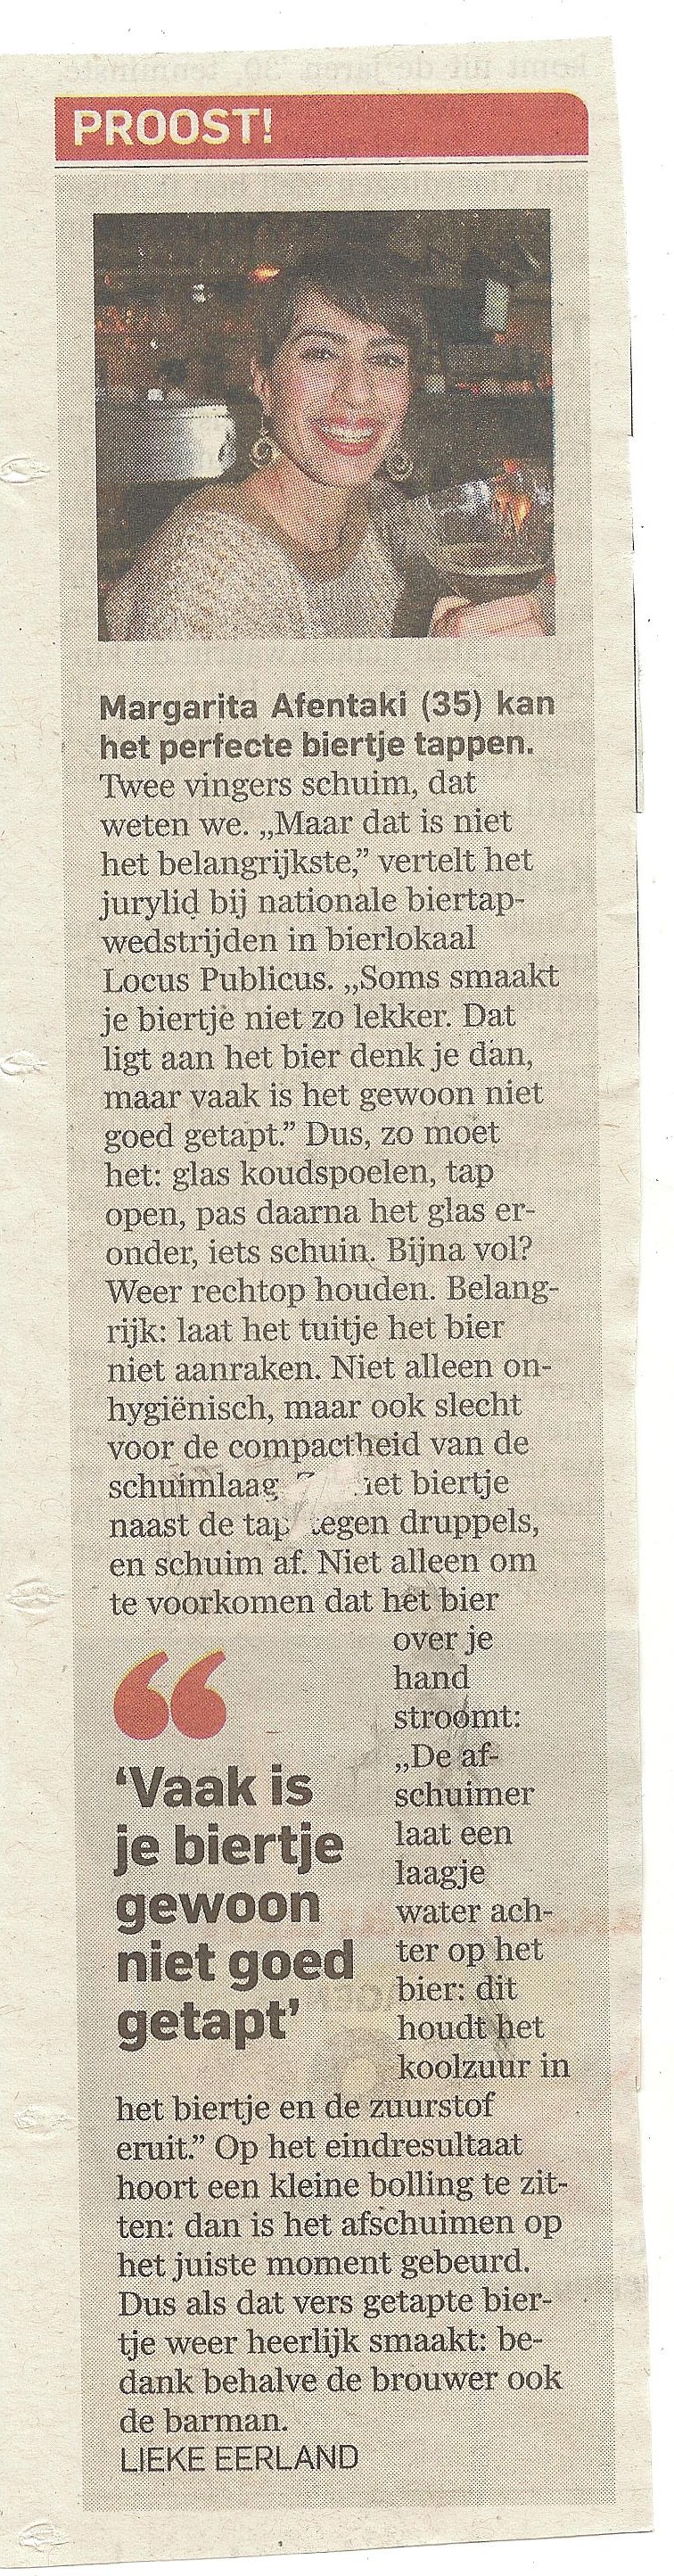 Nationale Biertapwedsteijd Locus Publicus - artikel Algemeen Dagblad